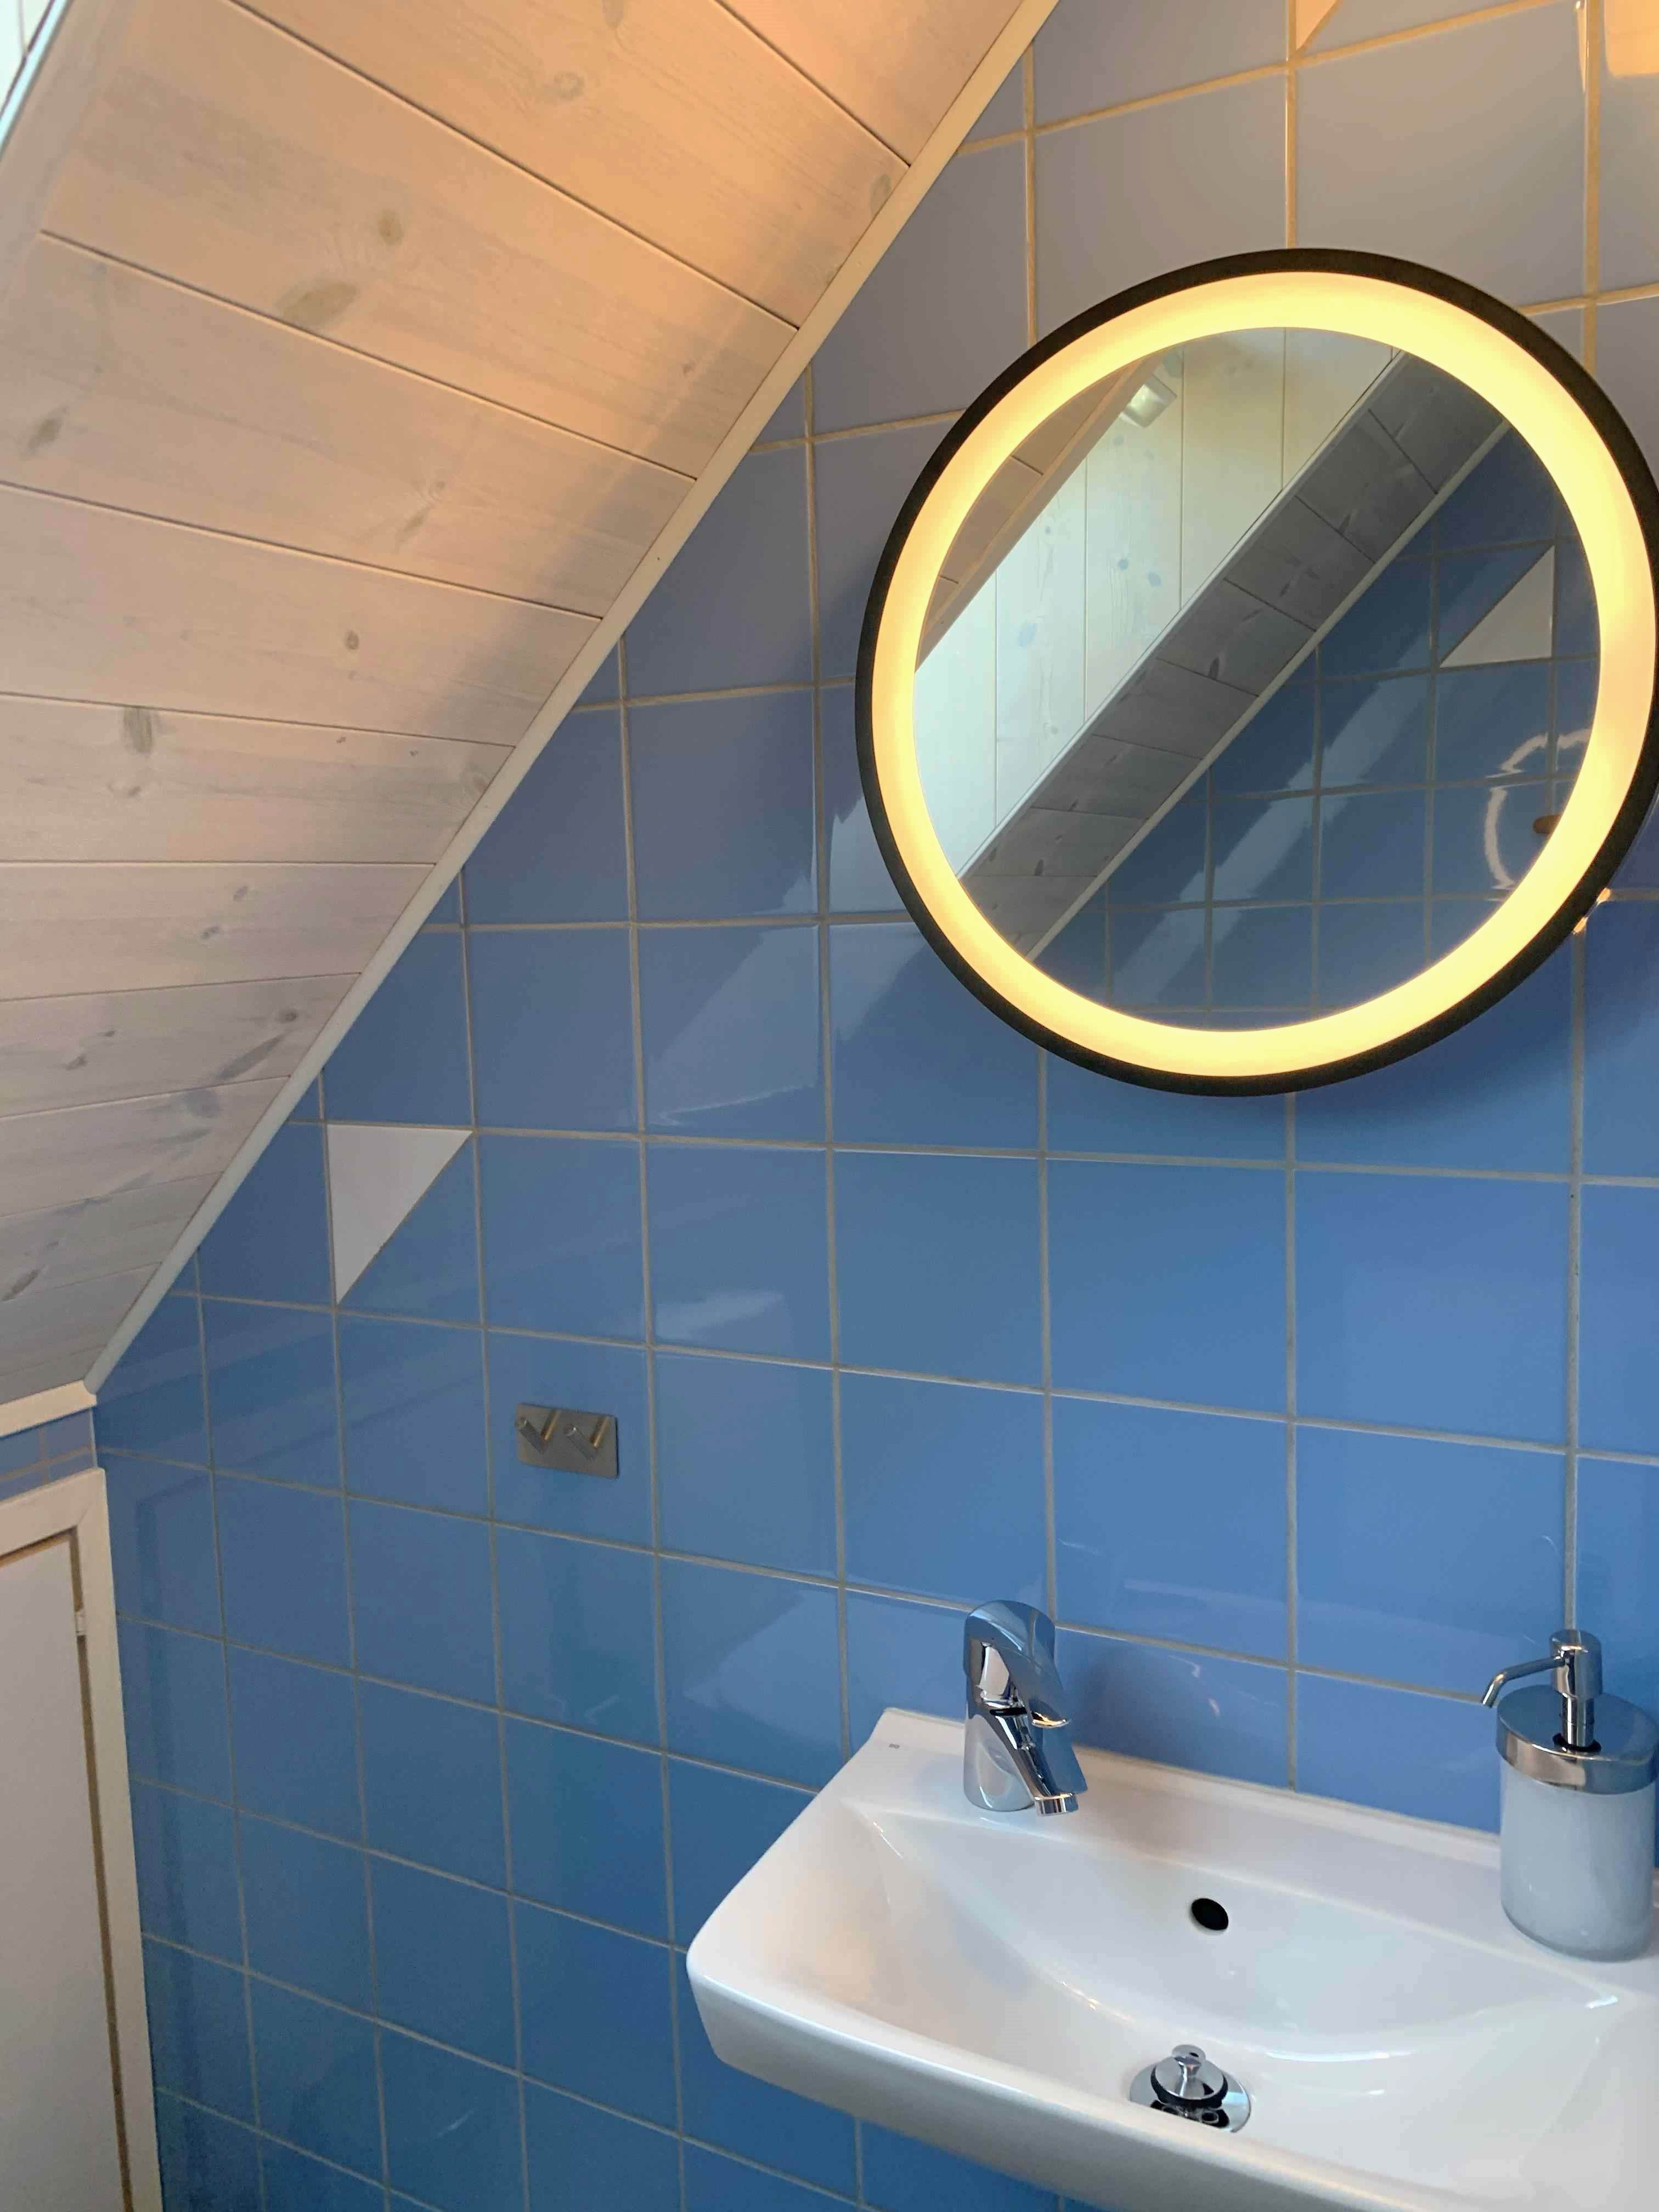 Lilla wc spegel